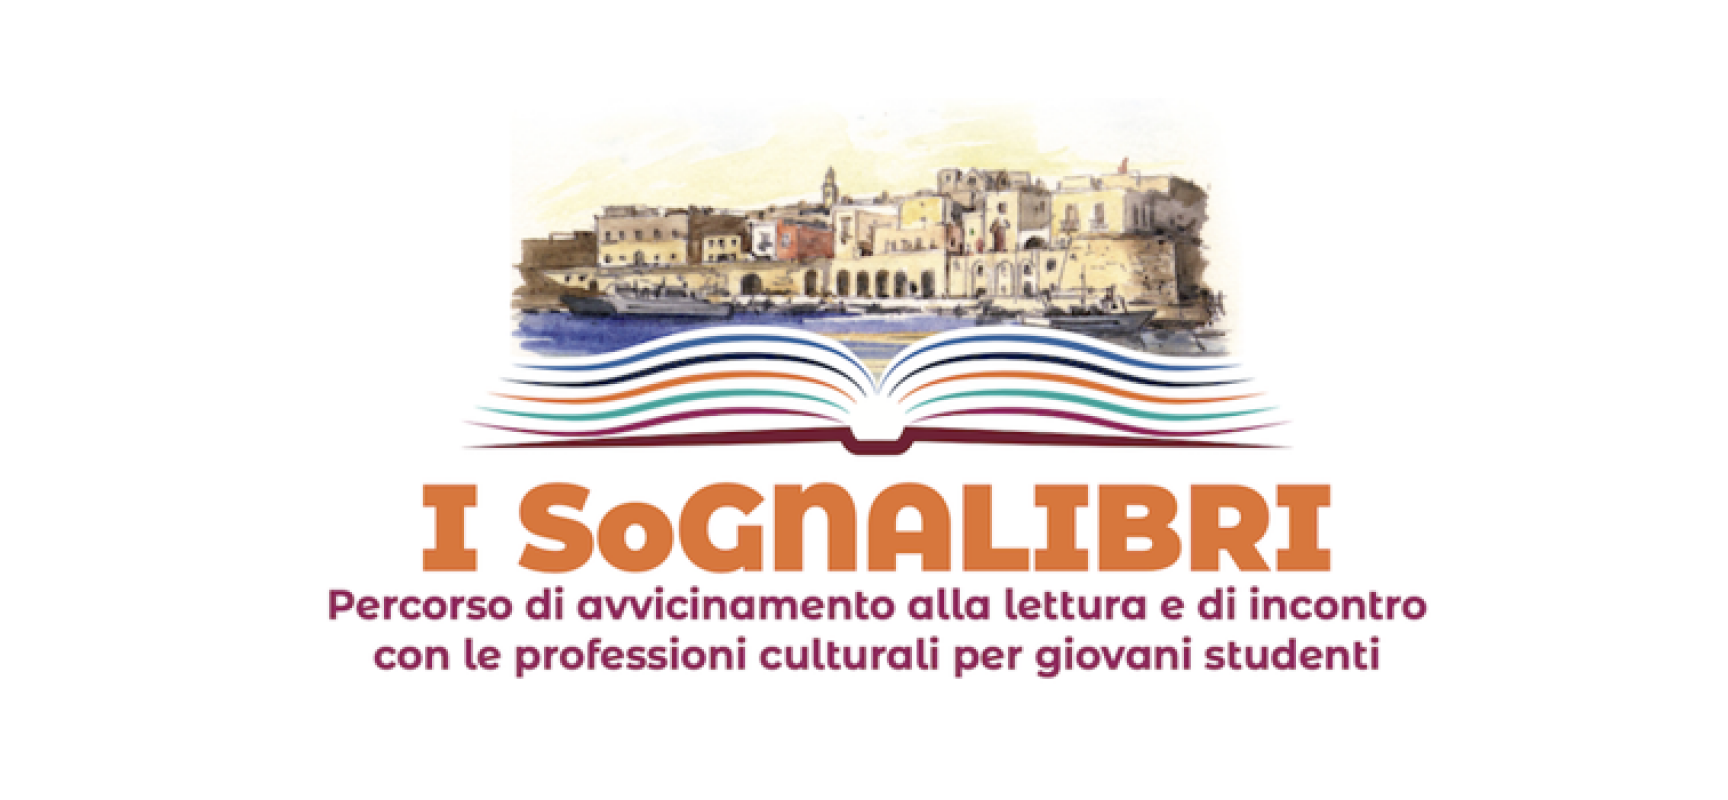 Università Luiss e Libri nel Borgo Antico ancora insieme per il progetto “I SoGNALIBRI”